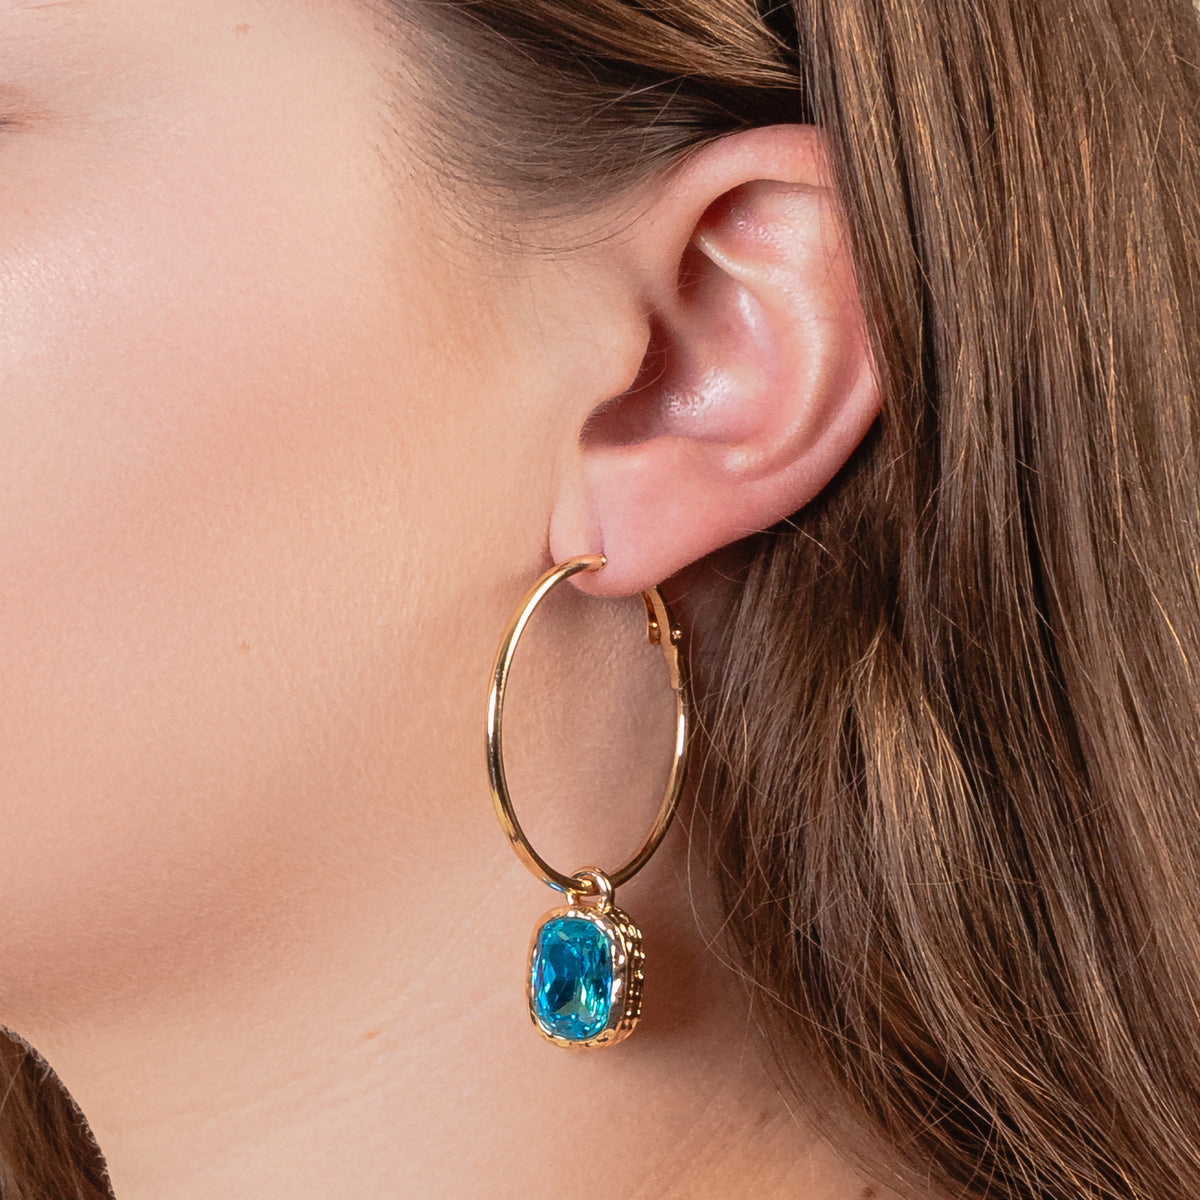 93242 - Rhinestone Hoop Earrings - Turquoise